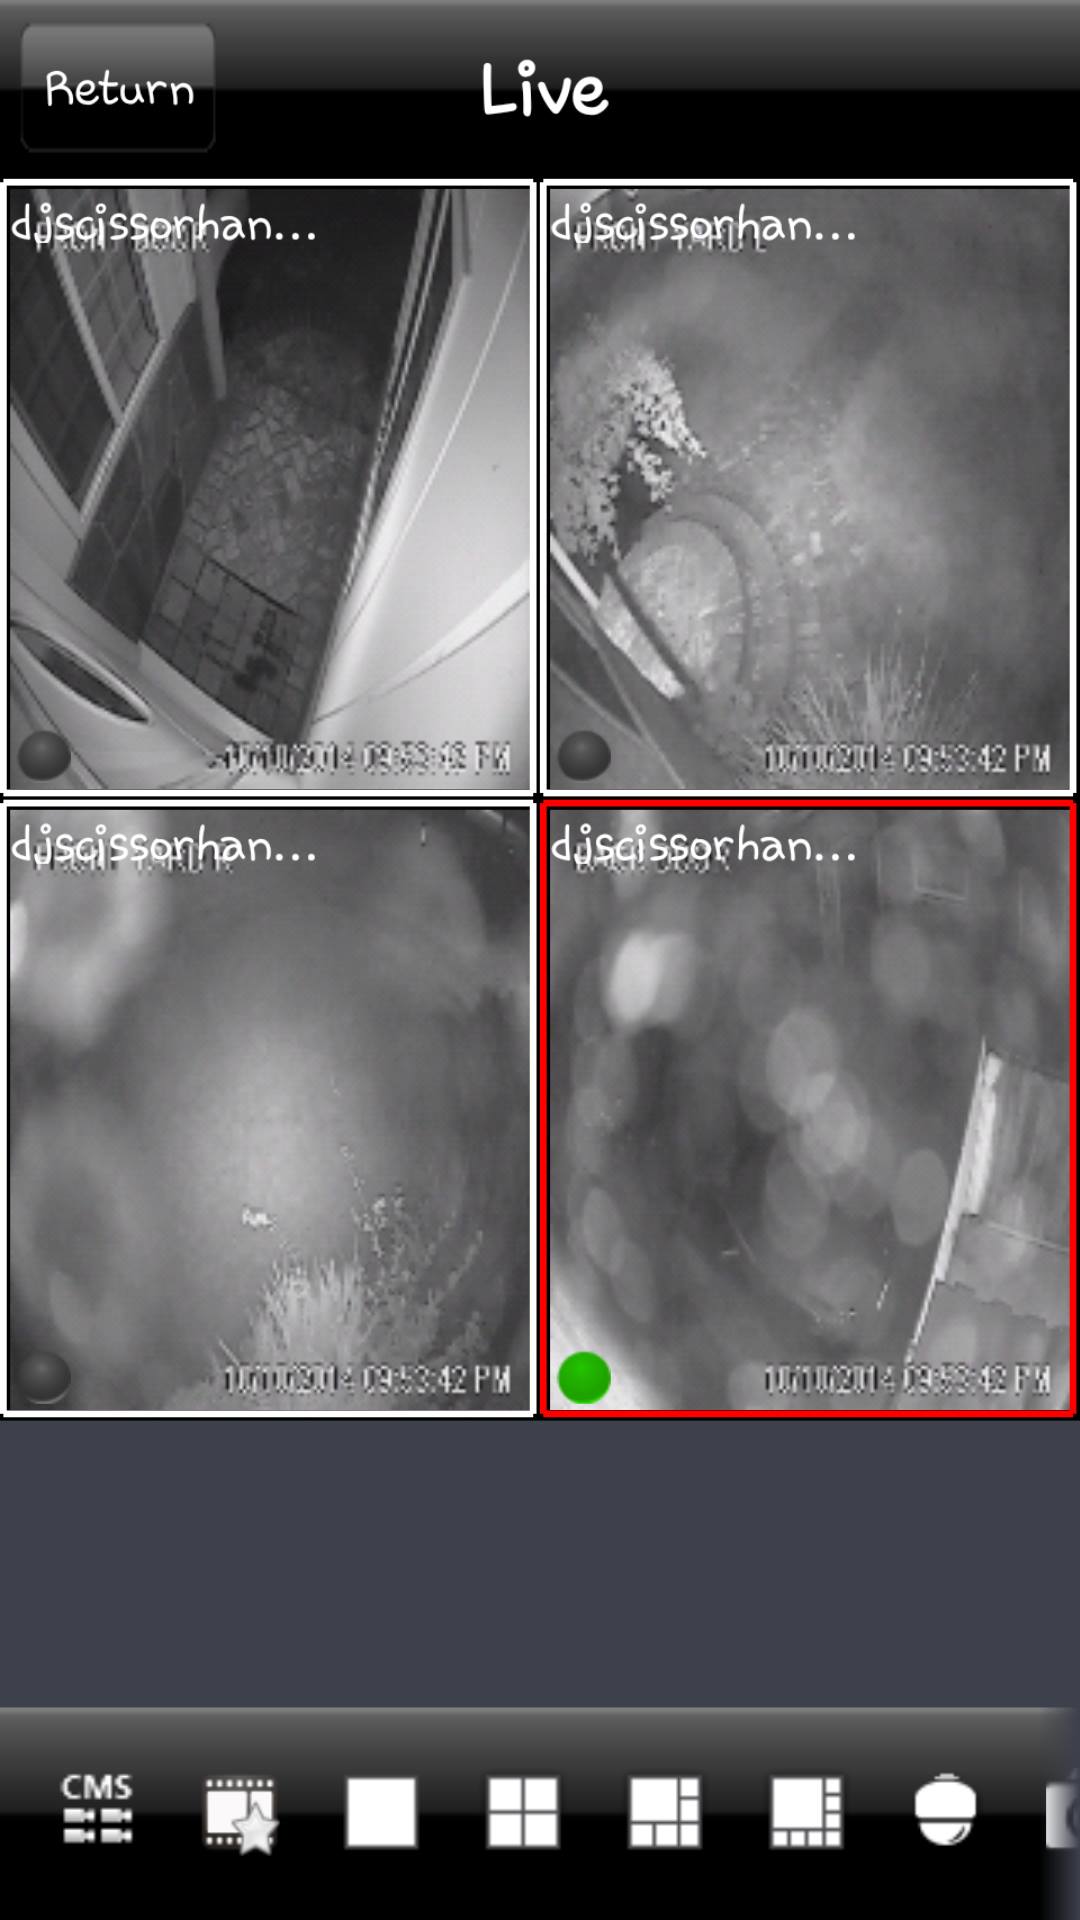 De ce camera mea CCTV nu funcționează noaptea?